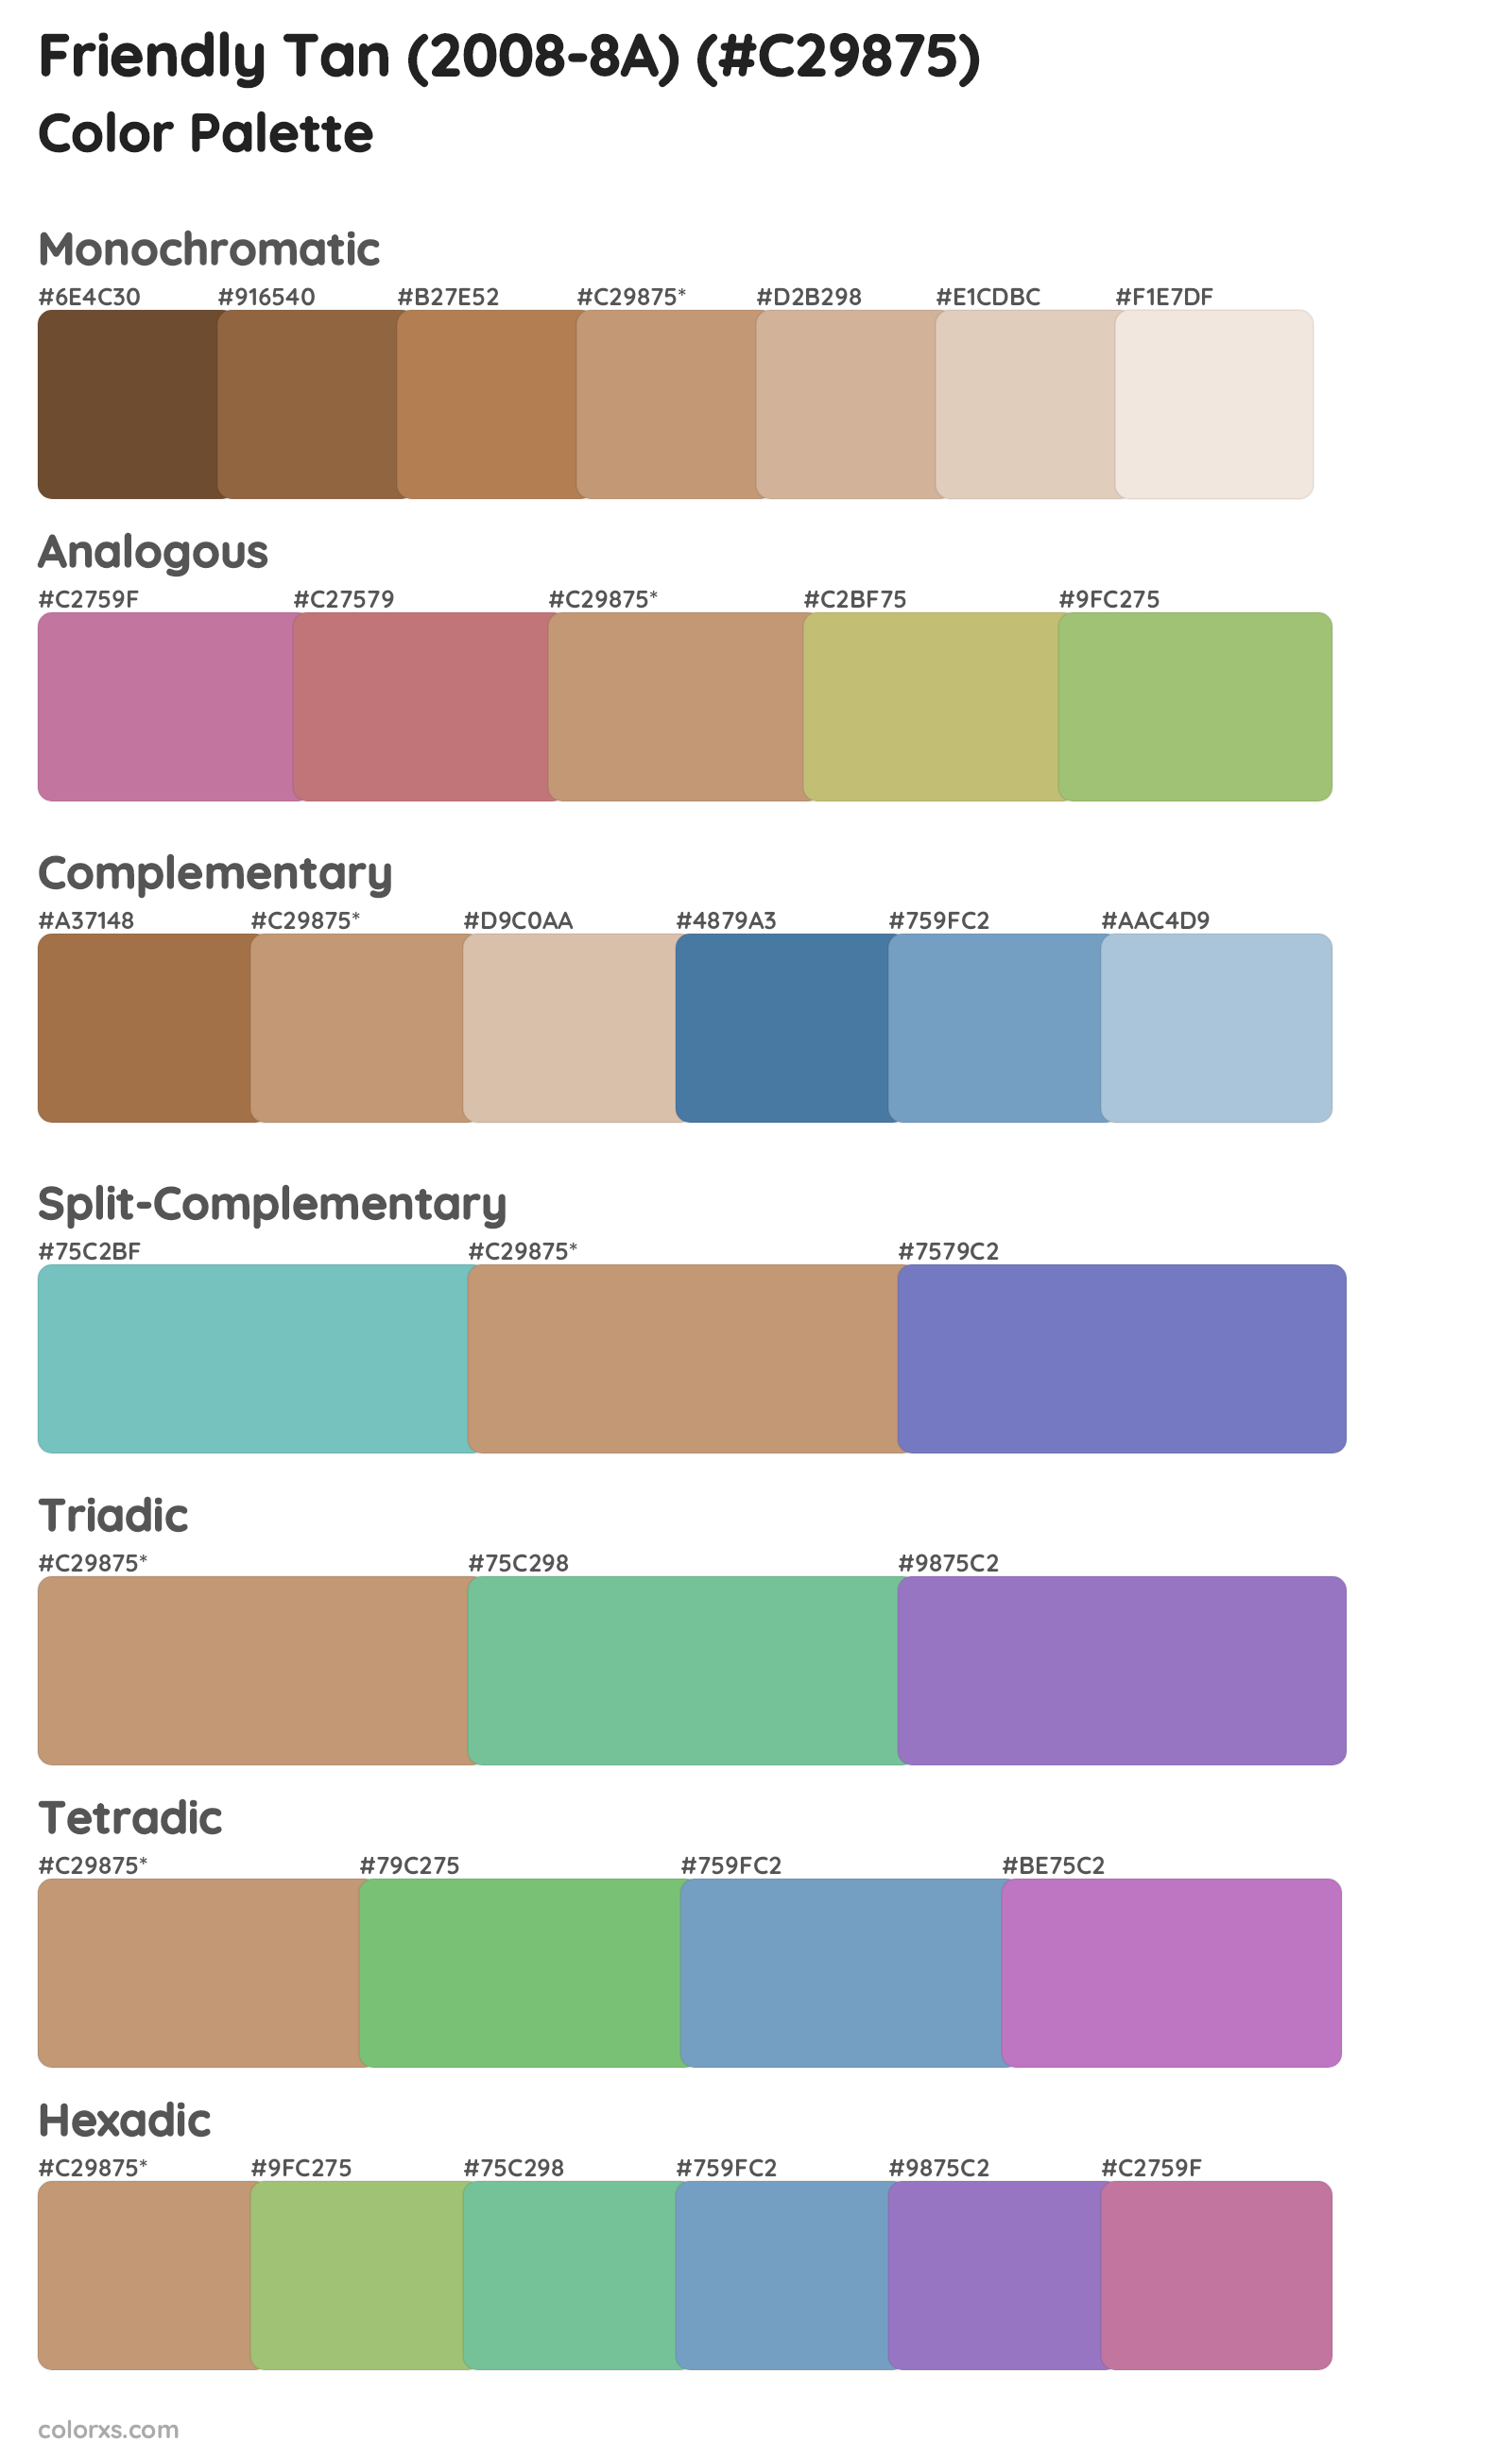 Friendly Tan (2008-8A) Color Scheme Palettes